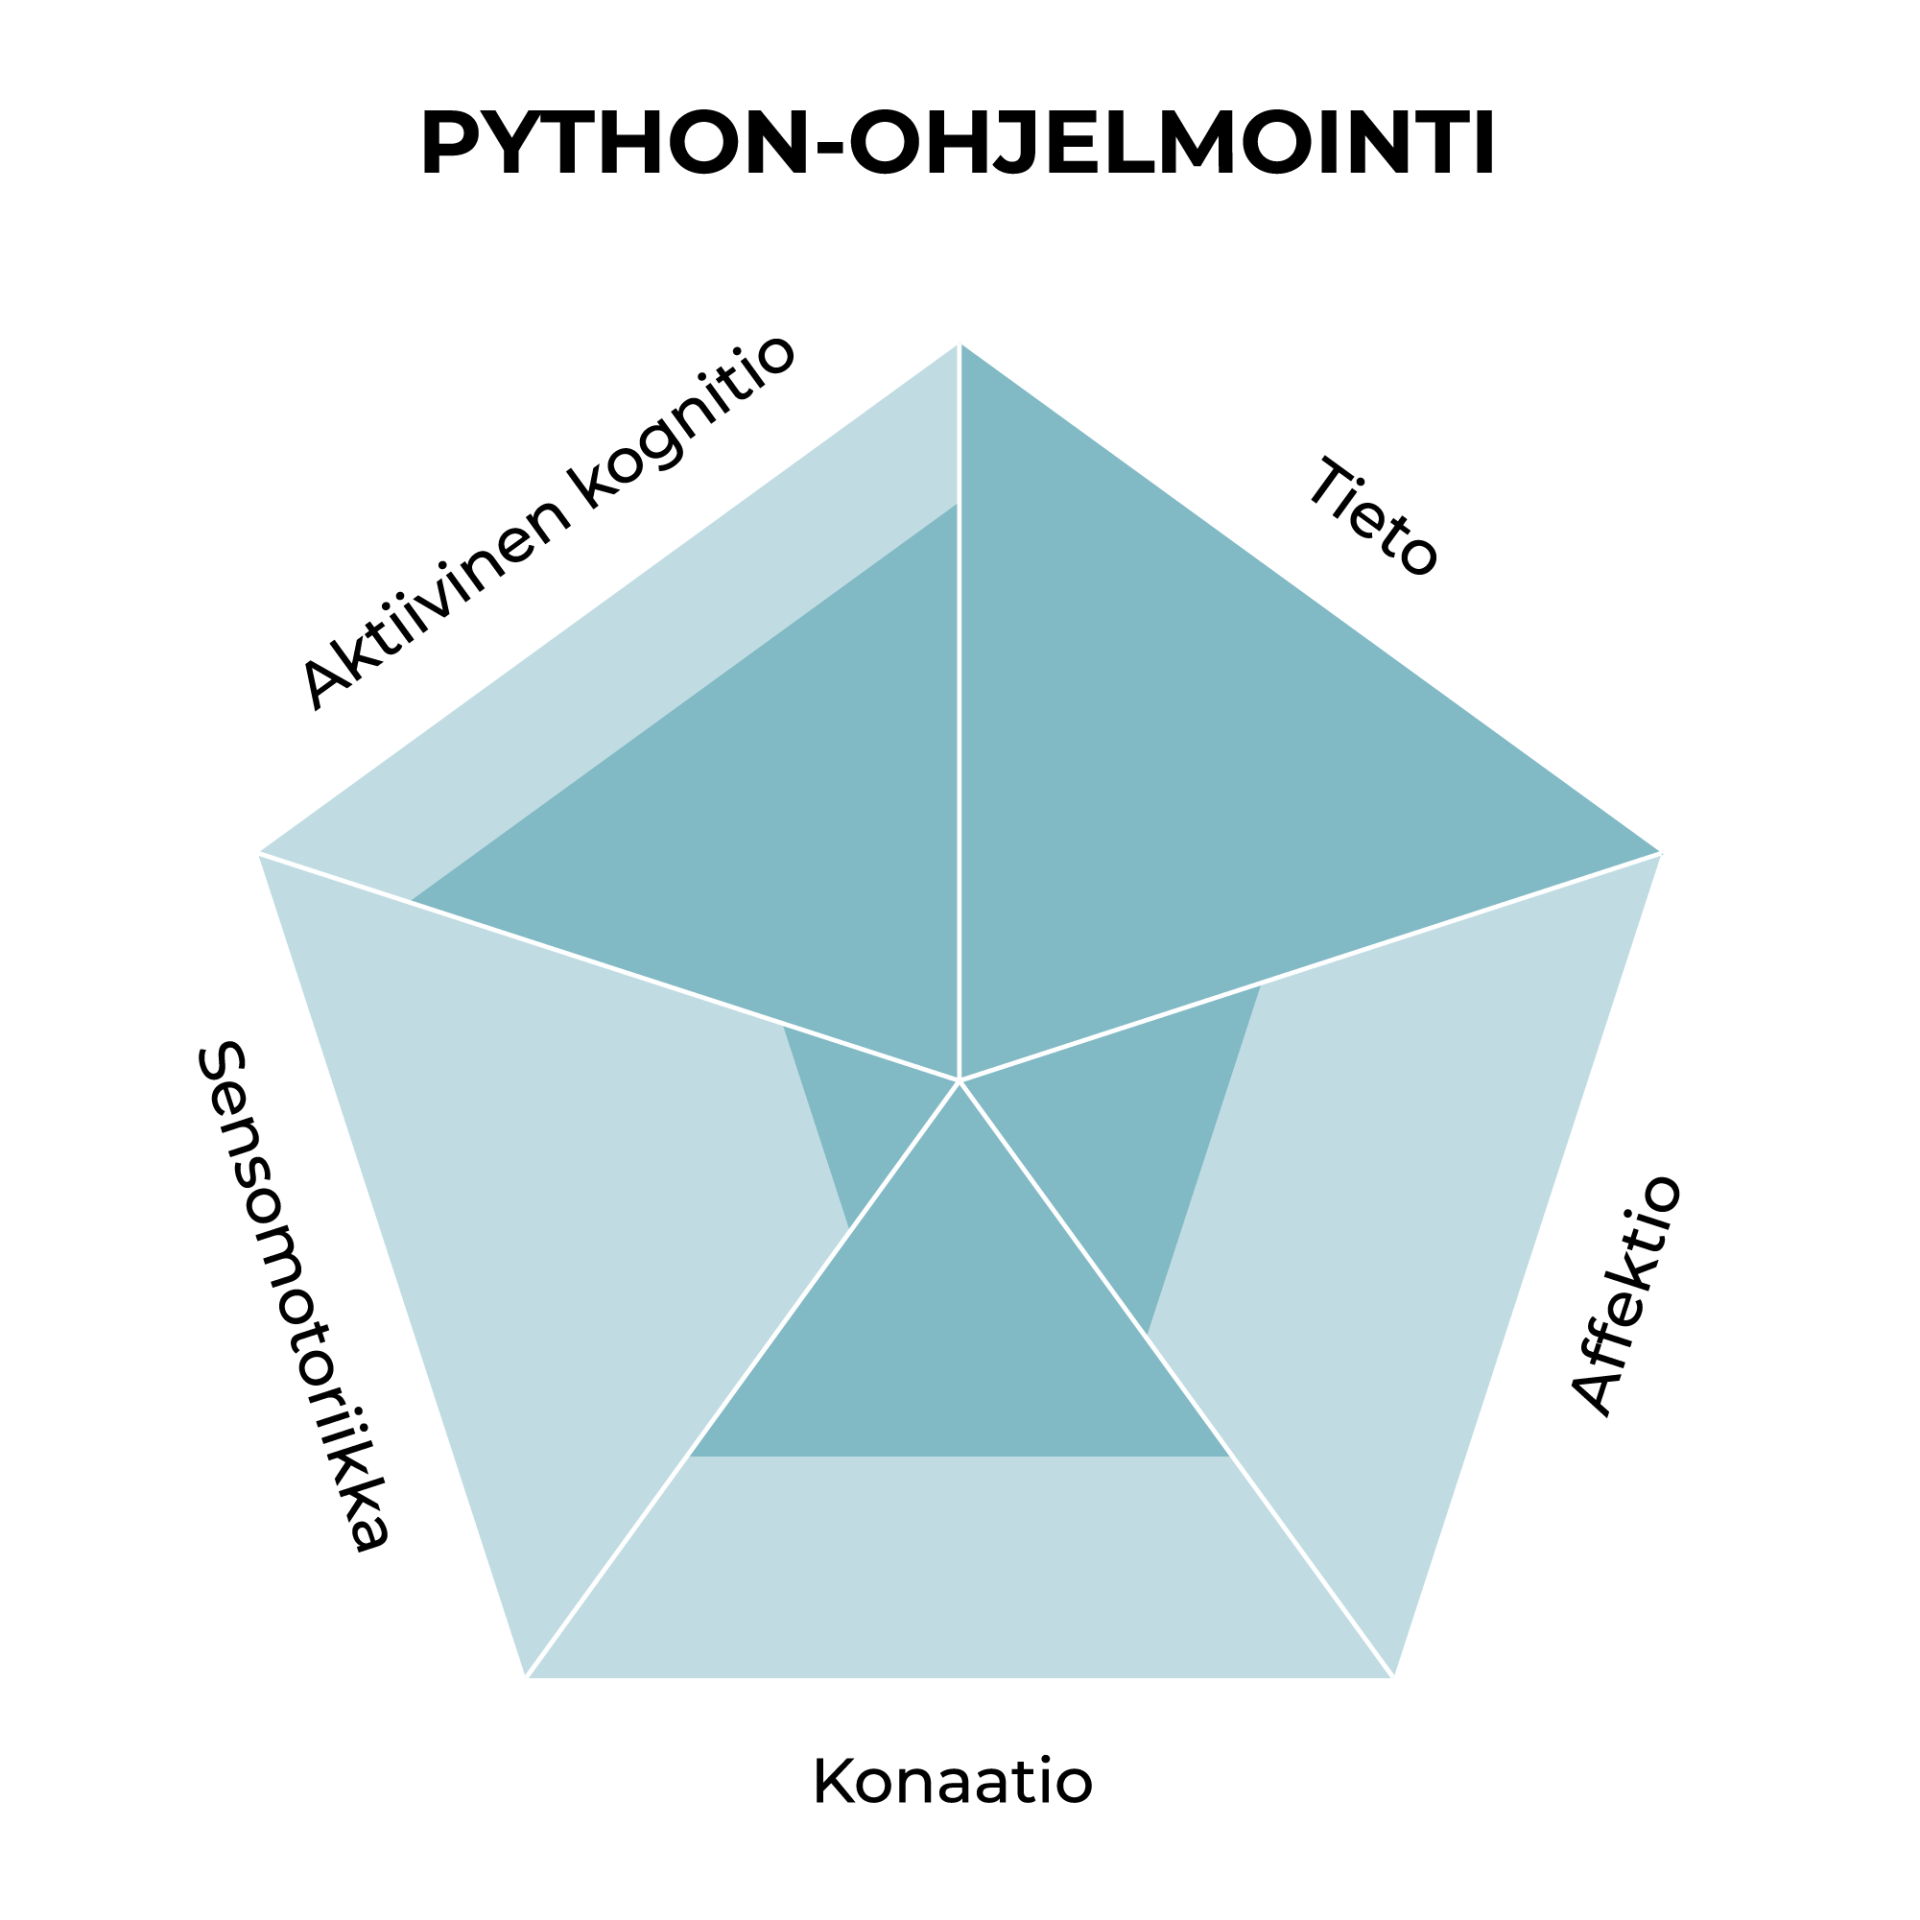 Kuvio, jossa python-ohjelmointitaidon viisi komponenttia on esitetty niiden painoarvojen mukaan.